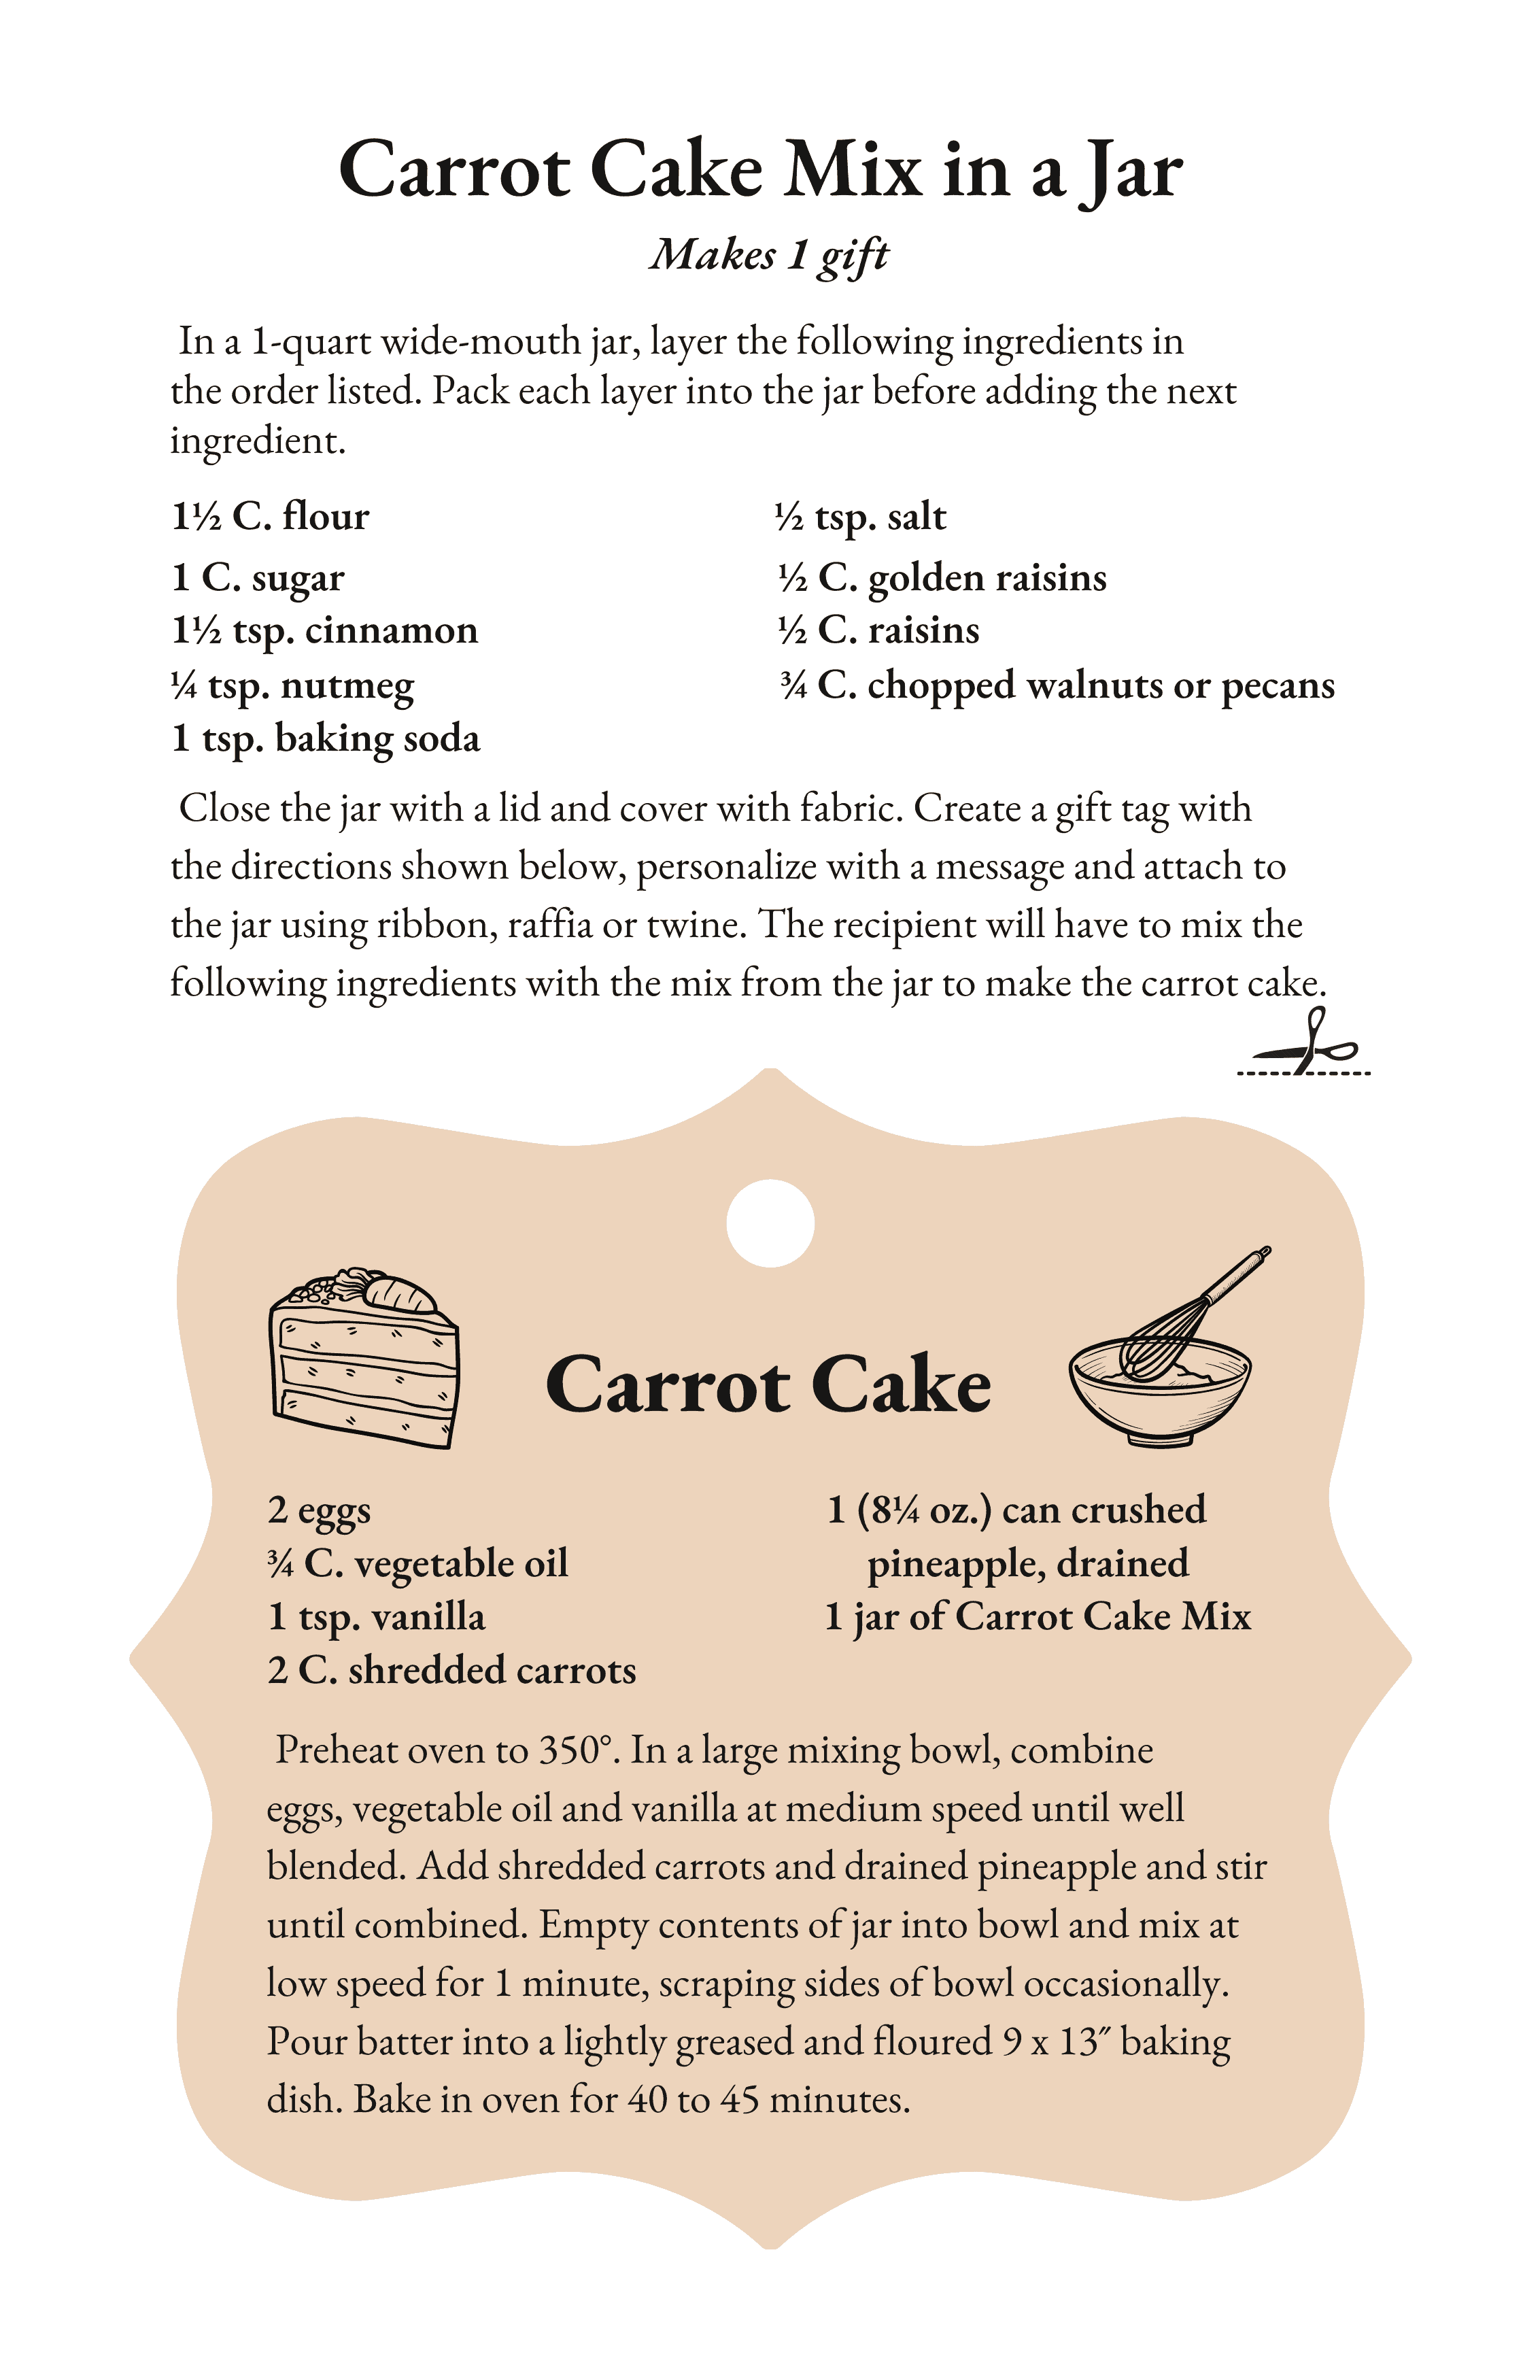 Carrot Cake Mix in a Jar Recipe